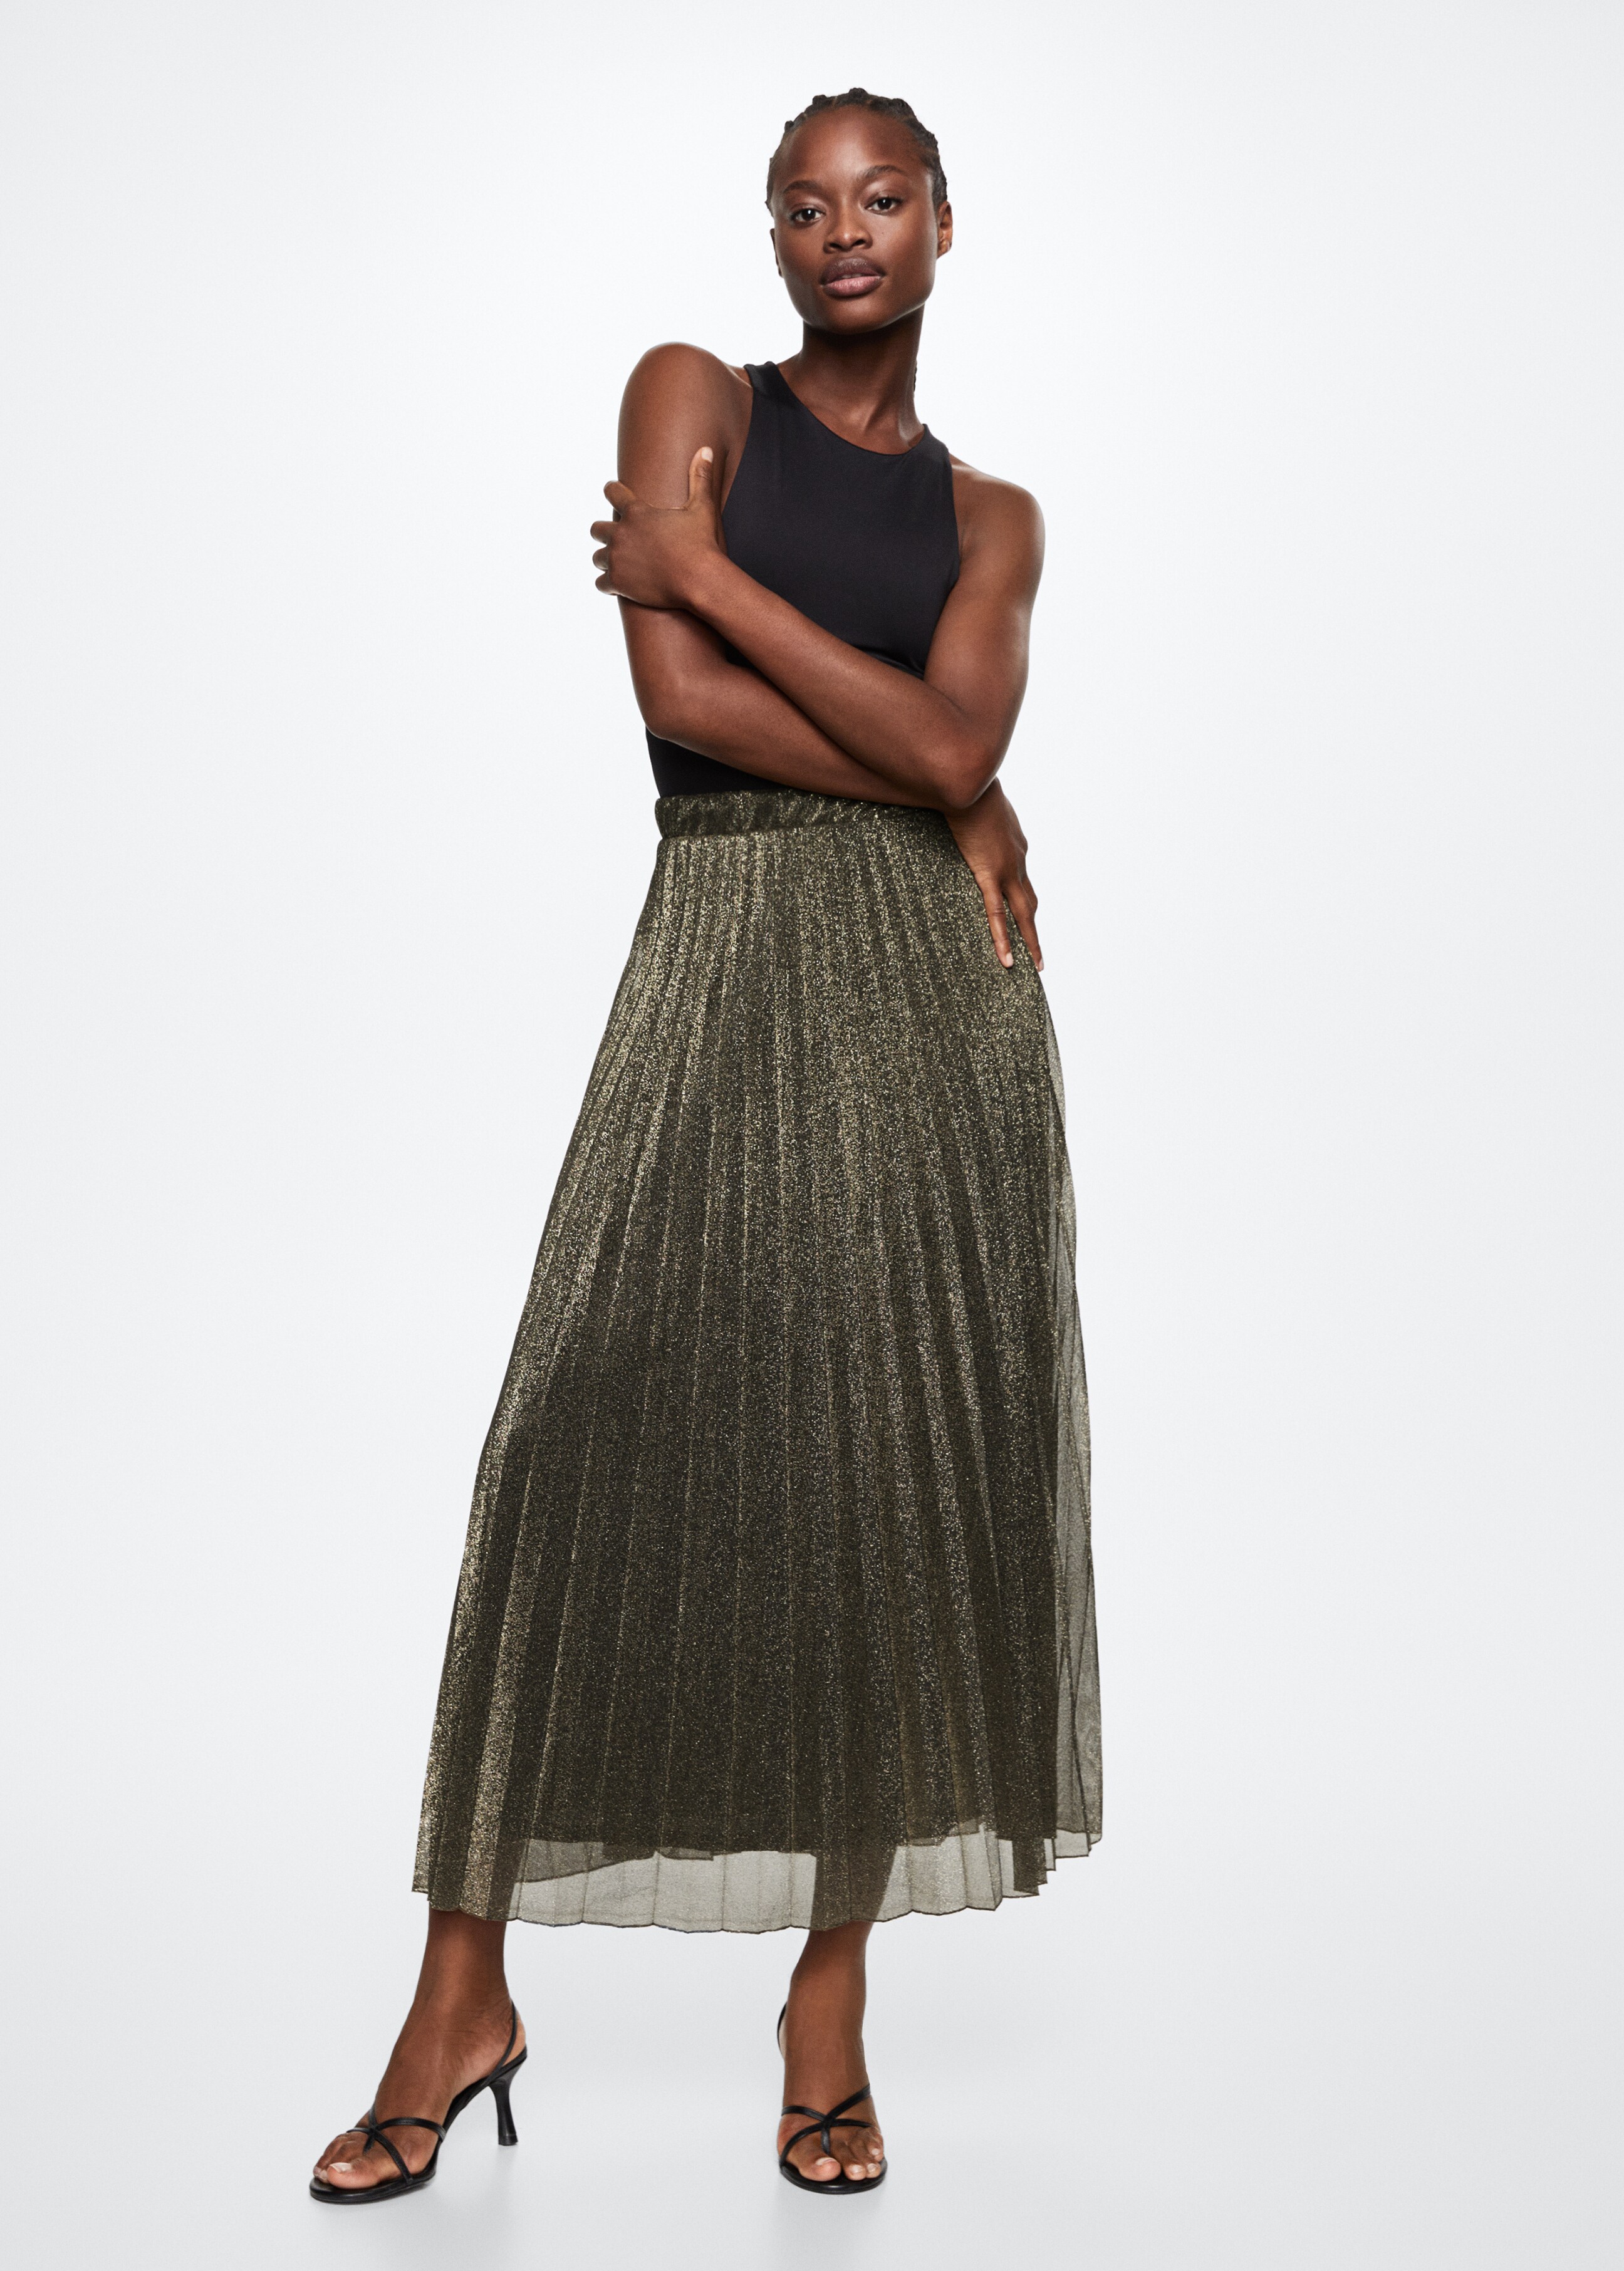 Shiny pleated skirt